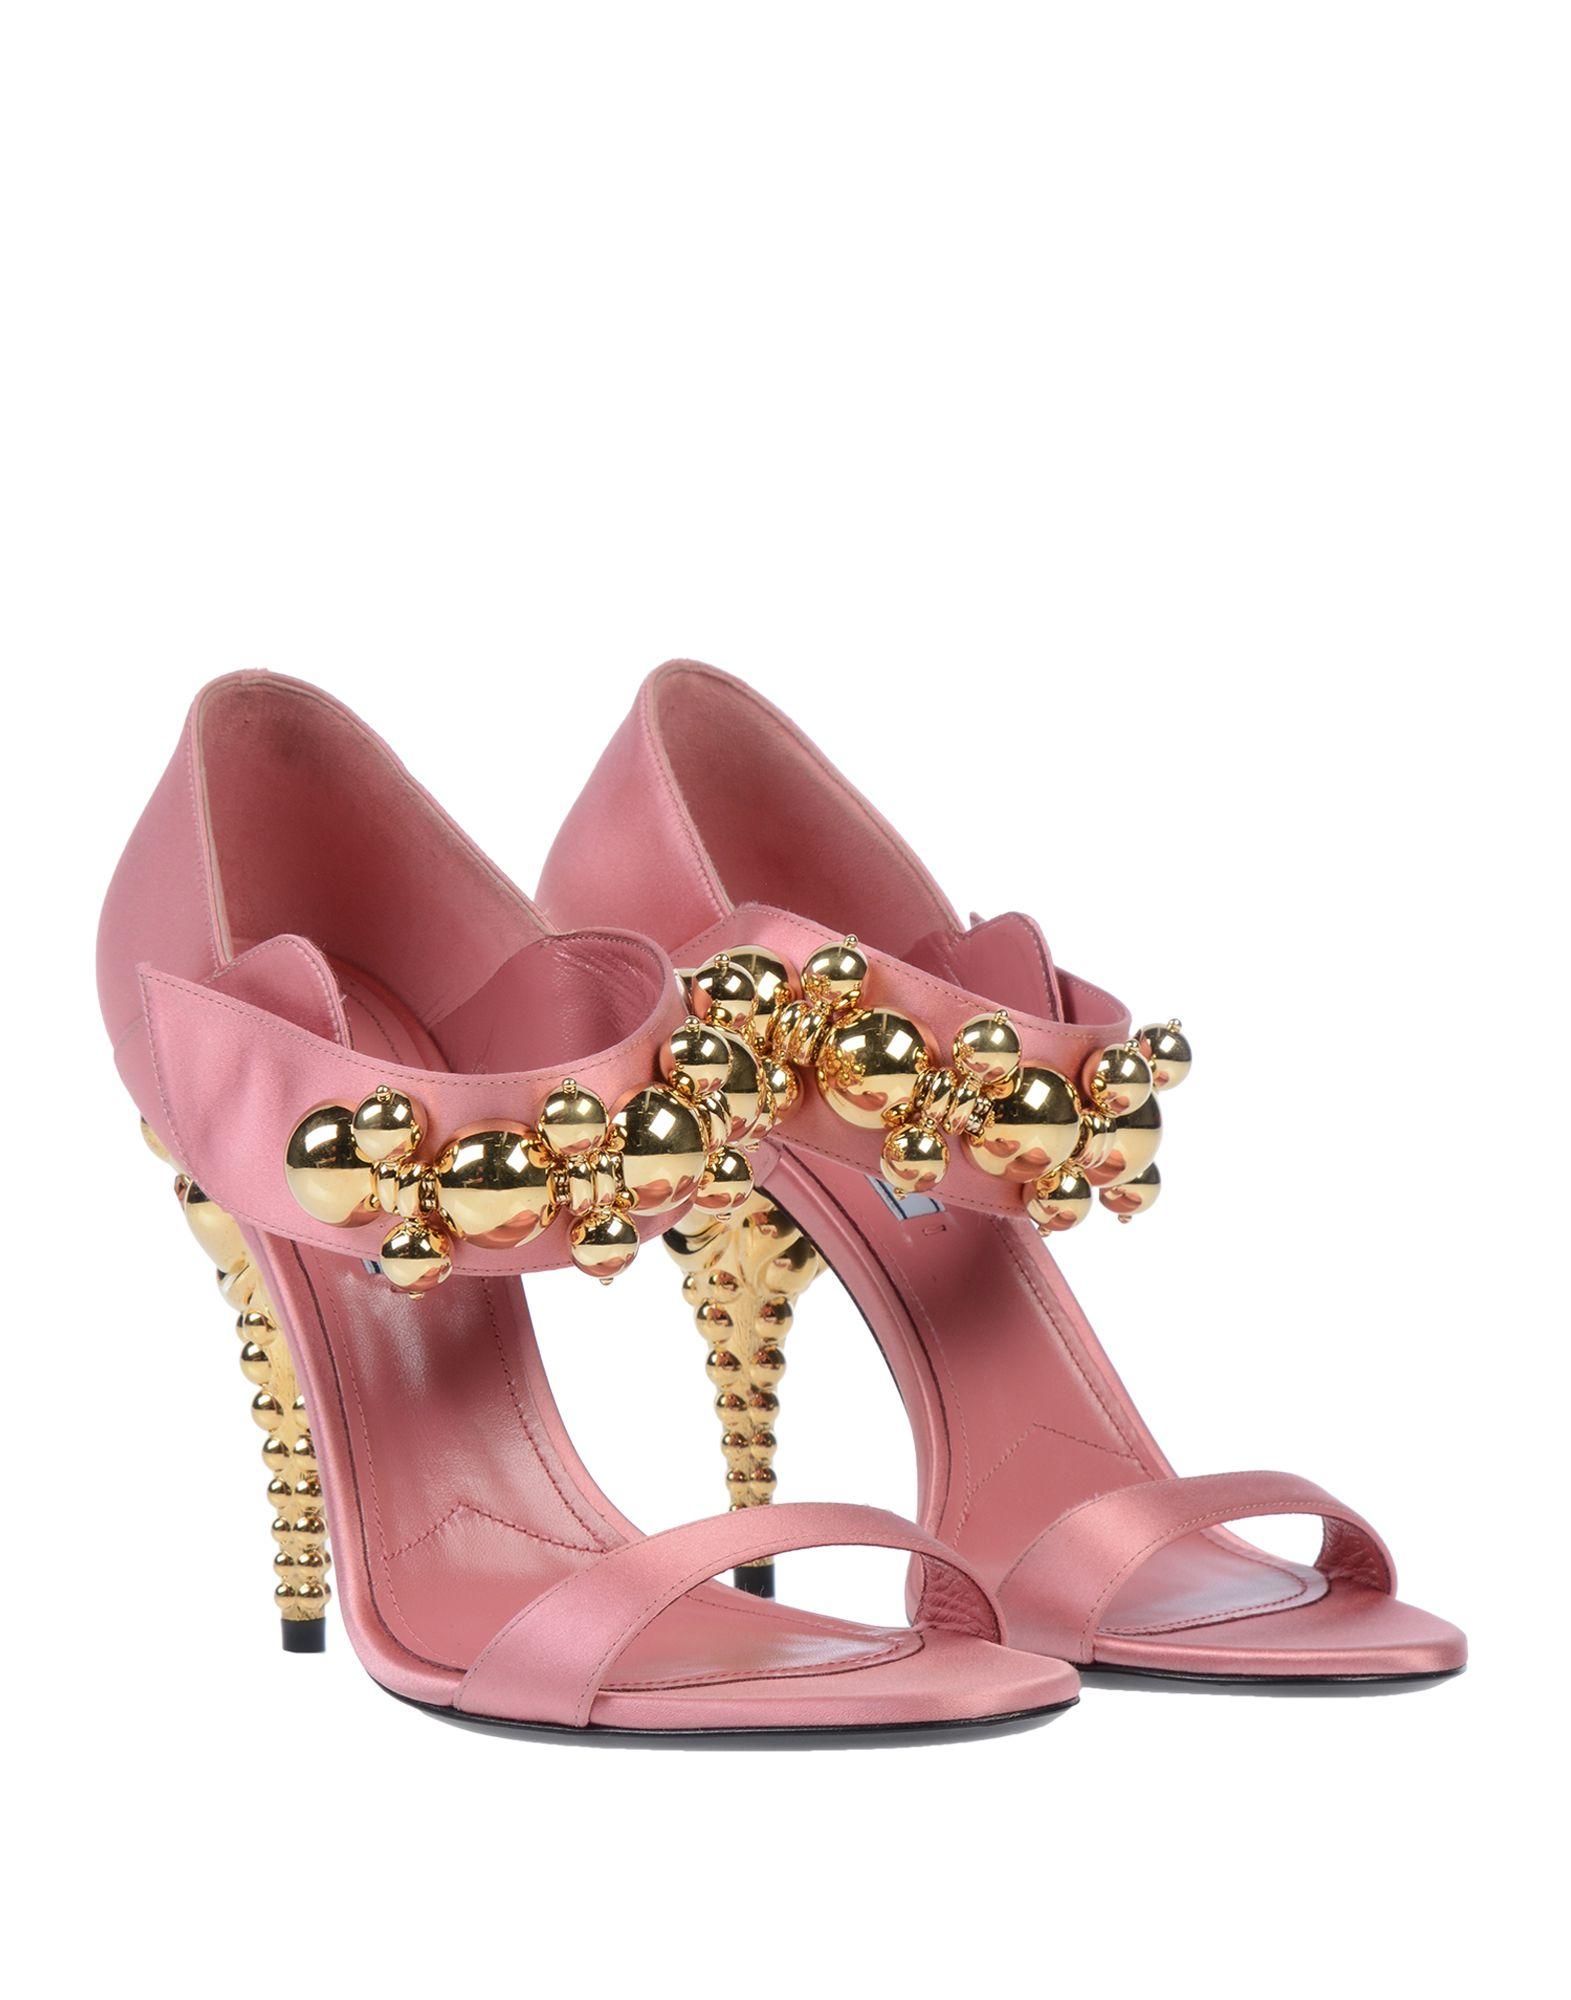 Prada Satin Sandals in Pink - Lyst